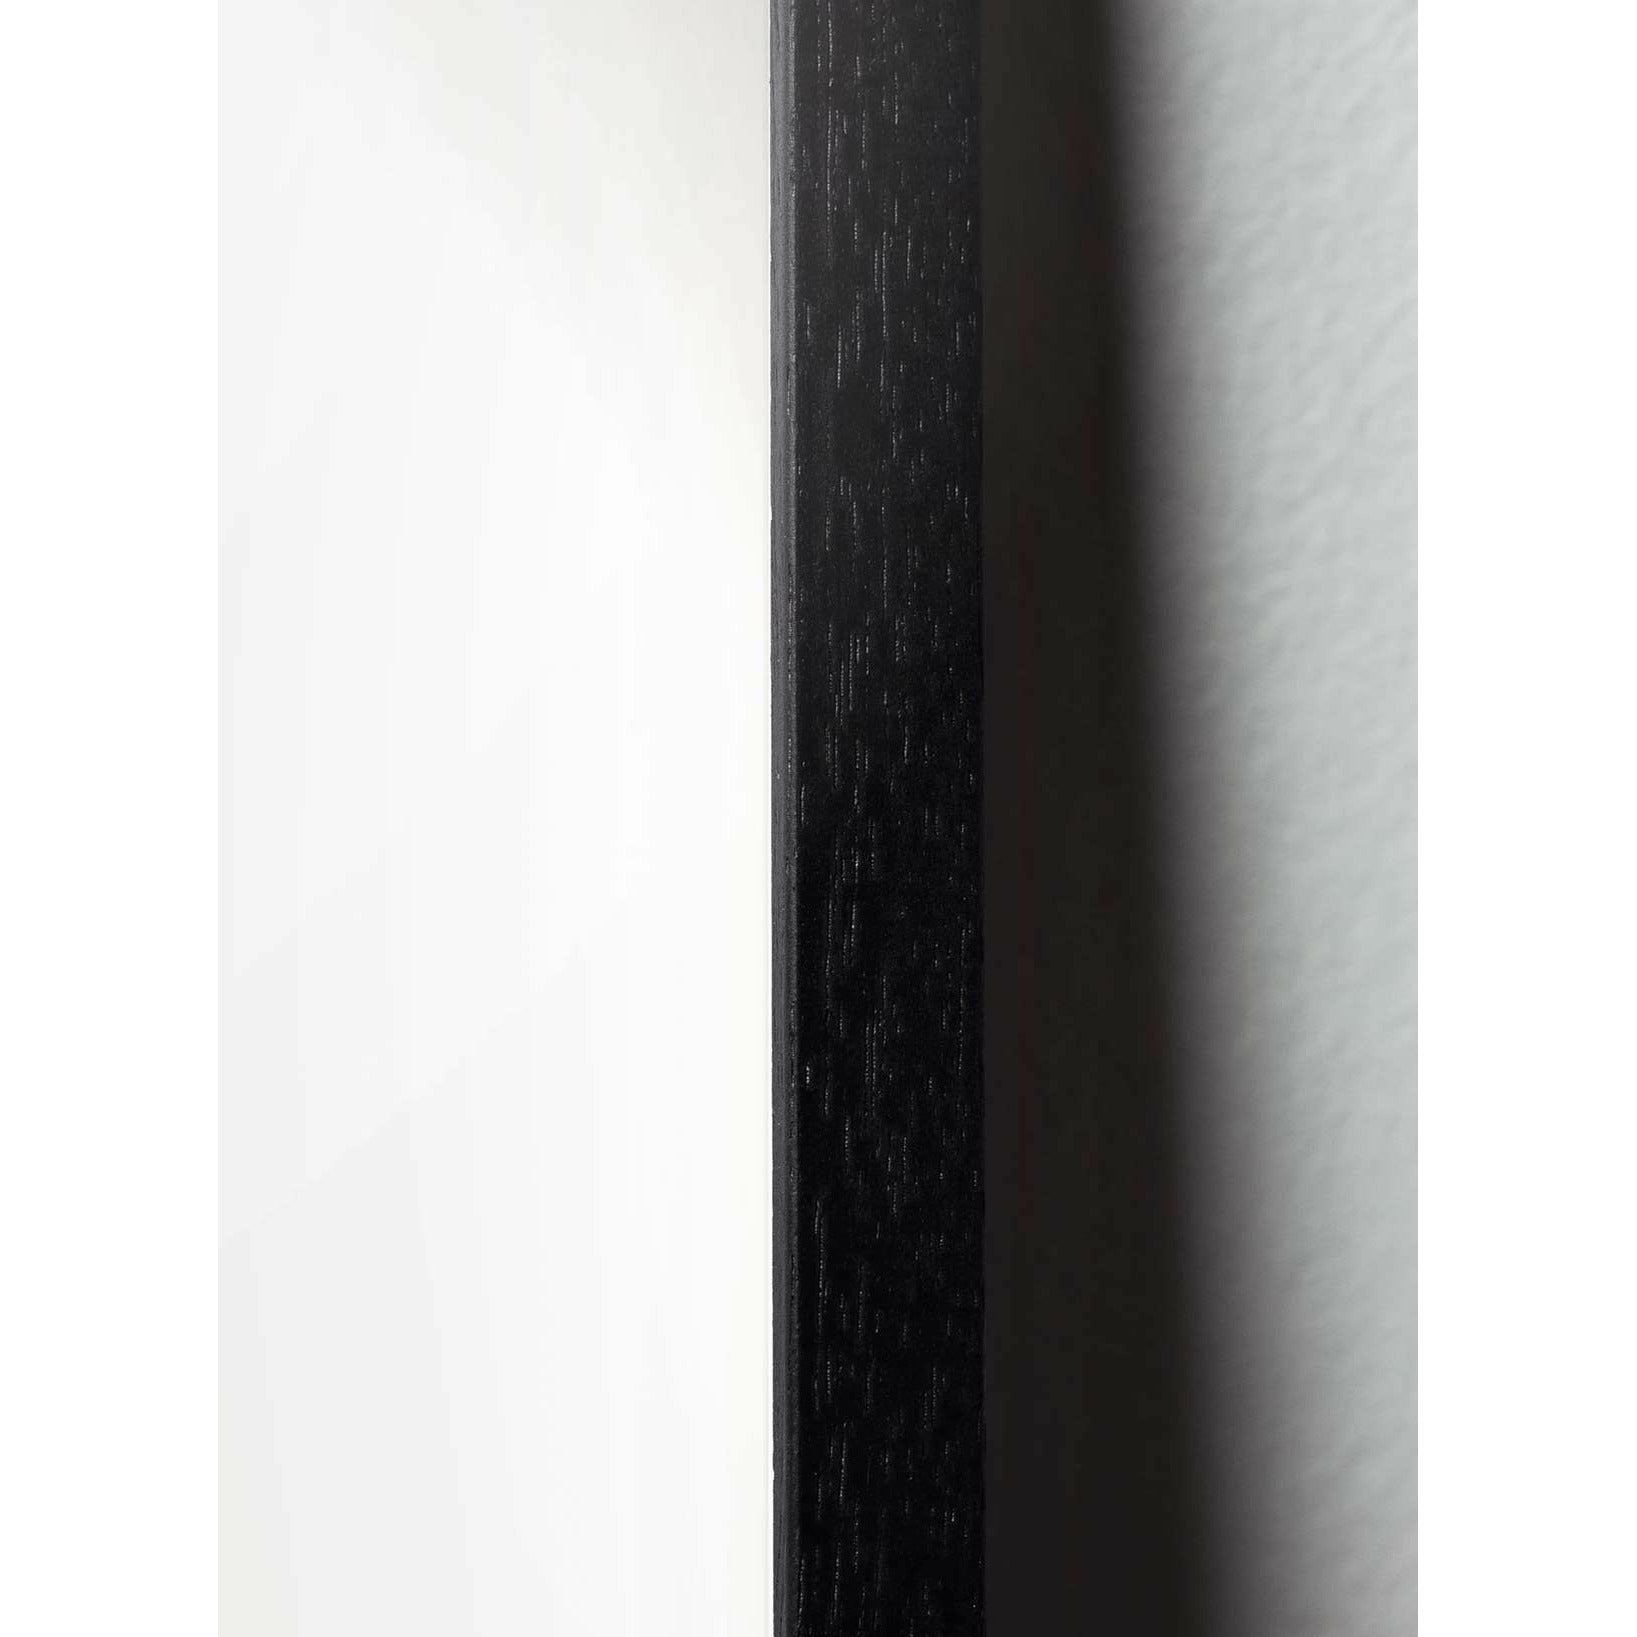 Brainchild Blumentopf Classic Poster, Rahmen aus schwarz lackiertem Holz 30x40 Cm, dunkelblauer Hintergrund